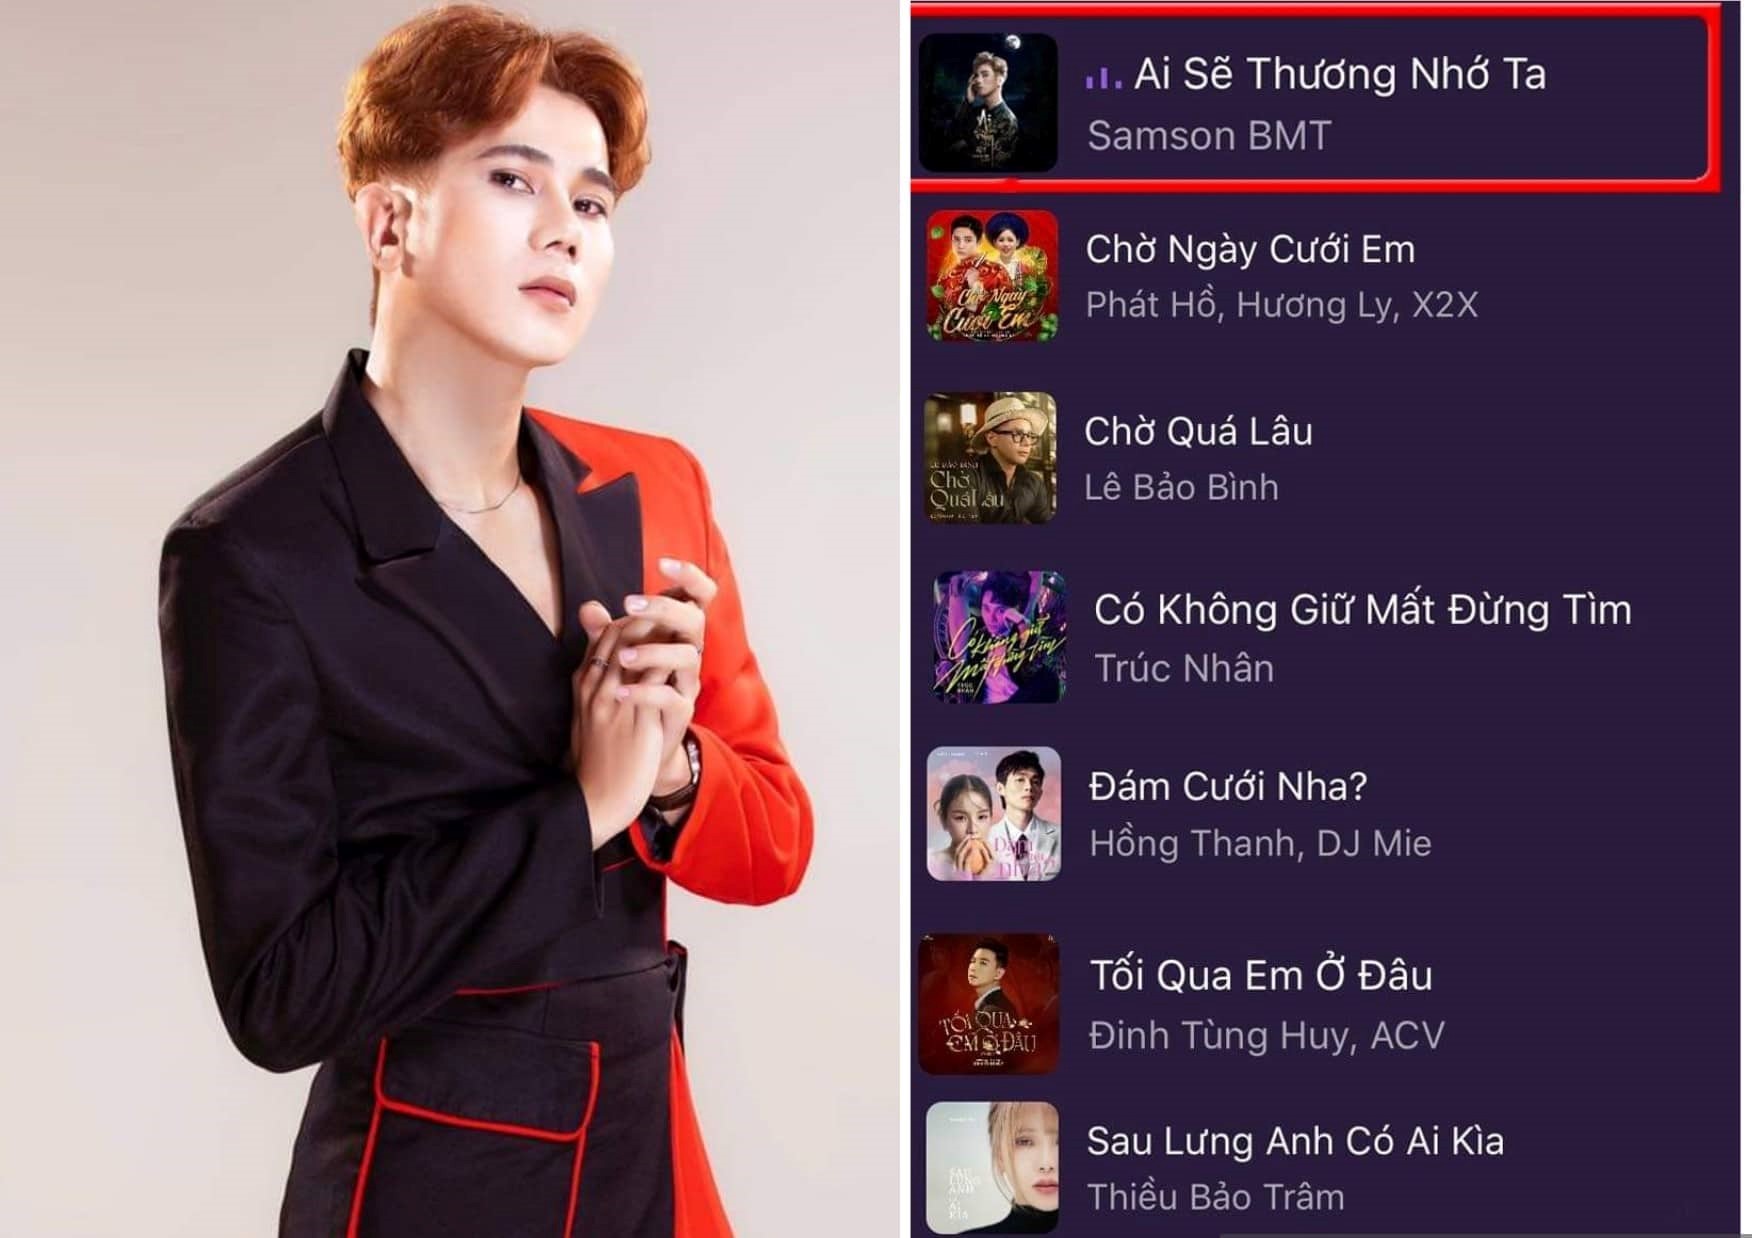 Samson BMT vượt Hương Ly, Lê Bảo Bình trên bảng xếp hạng Vpop - 1